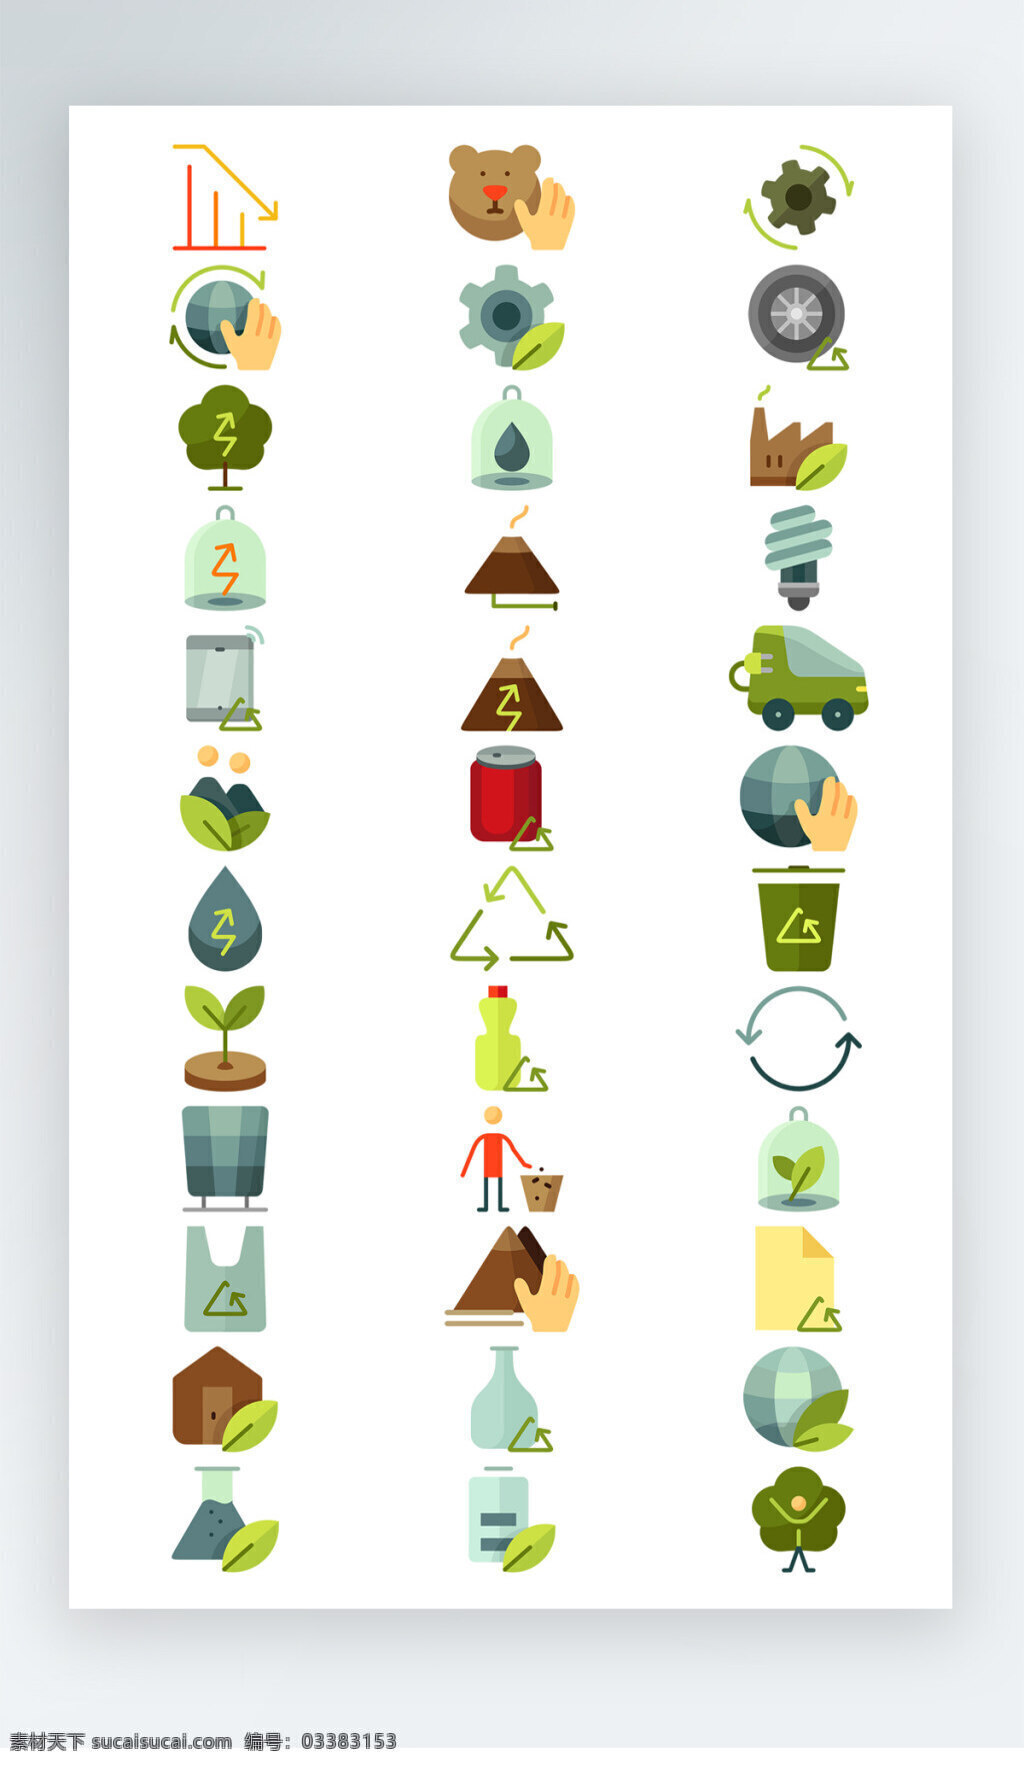 绿色环保 工具 彩色 图标素材 绿色环保工具 彩色图标素材 树叶图标